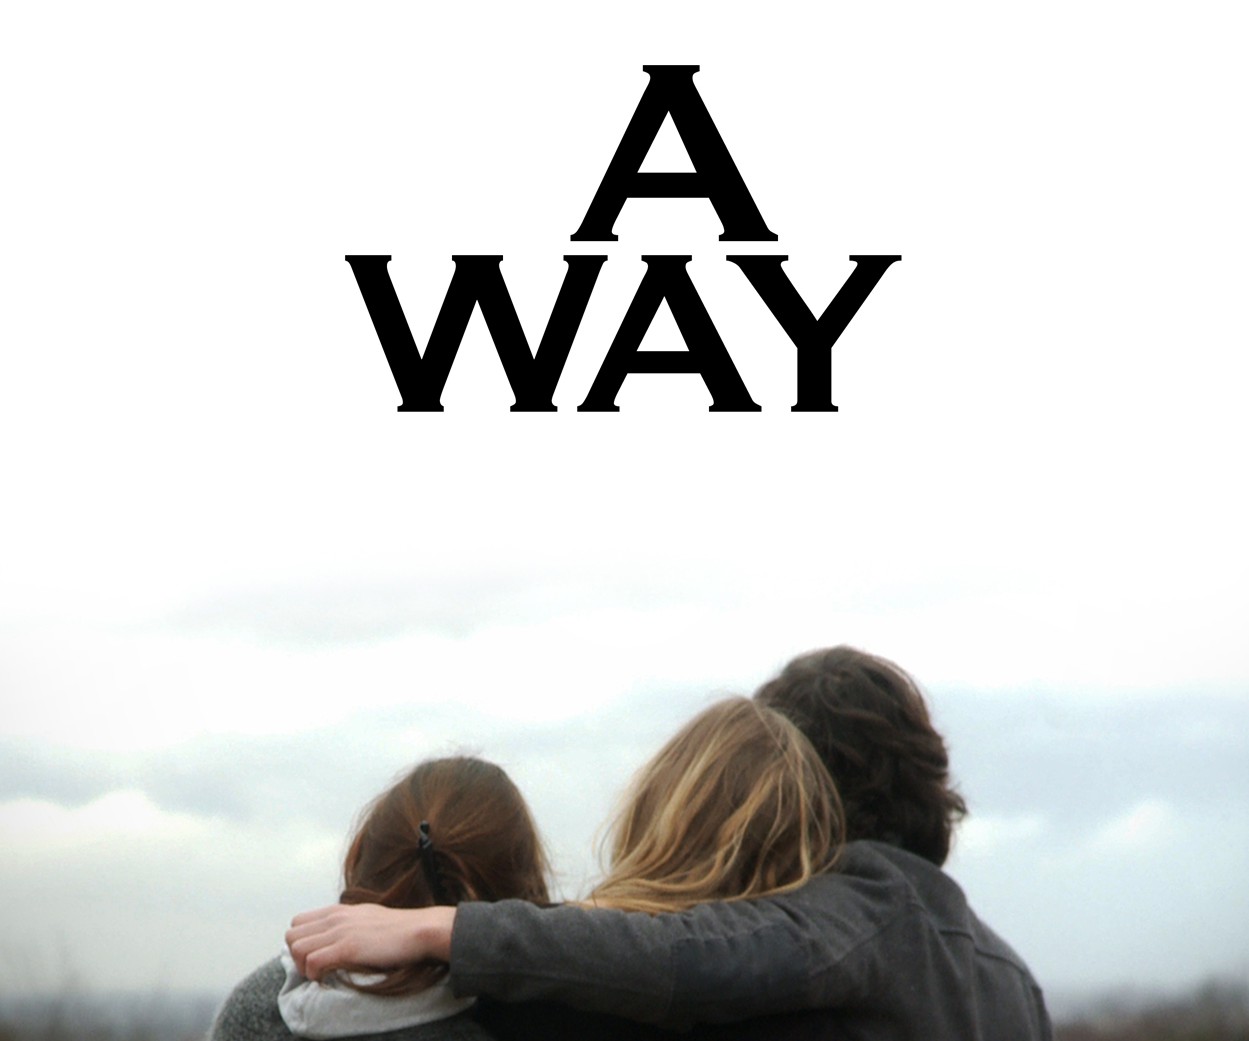 A Way [2010]